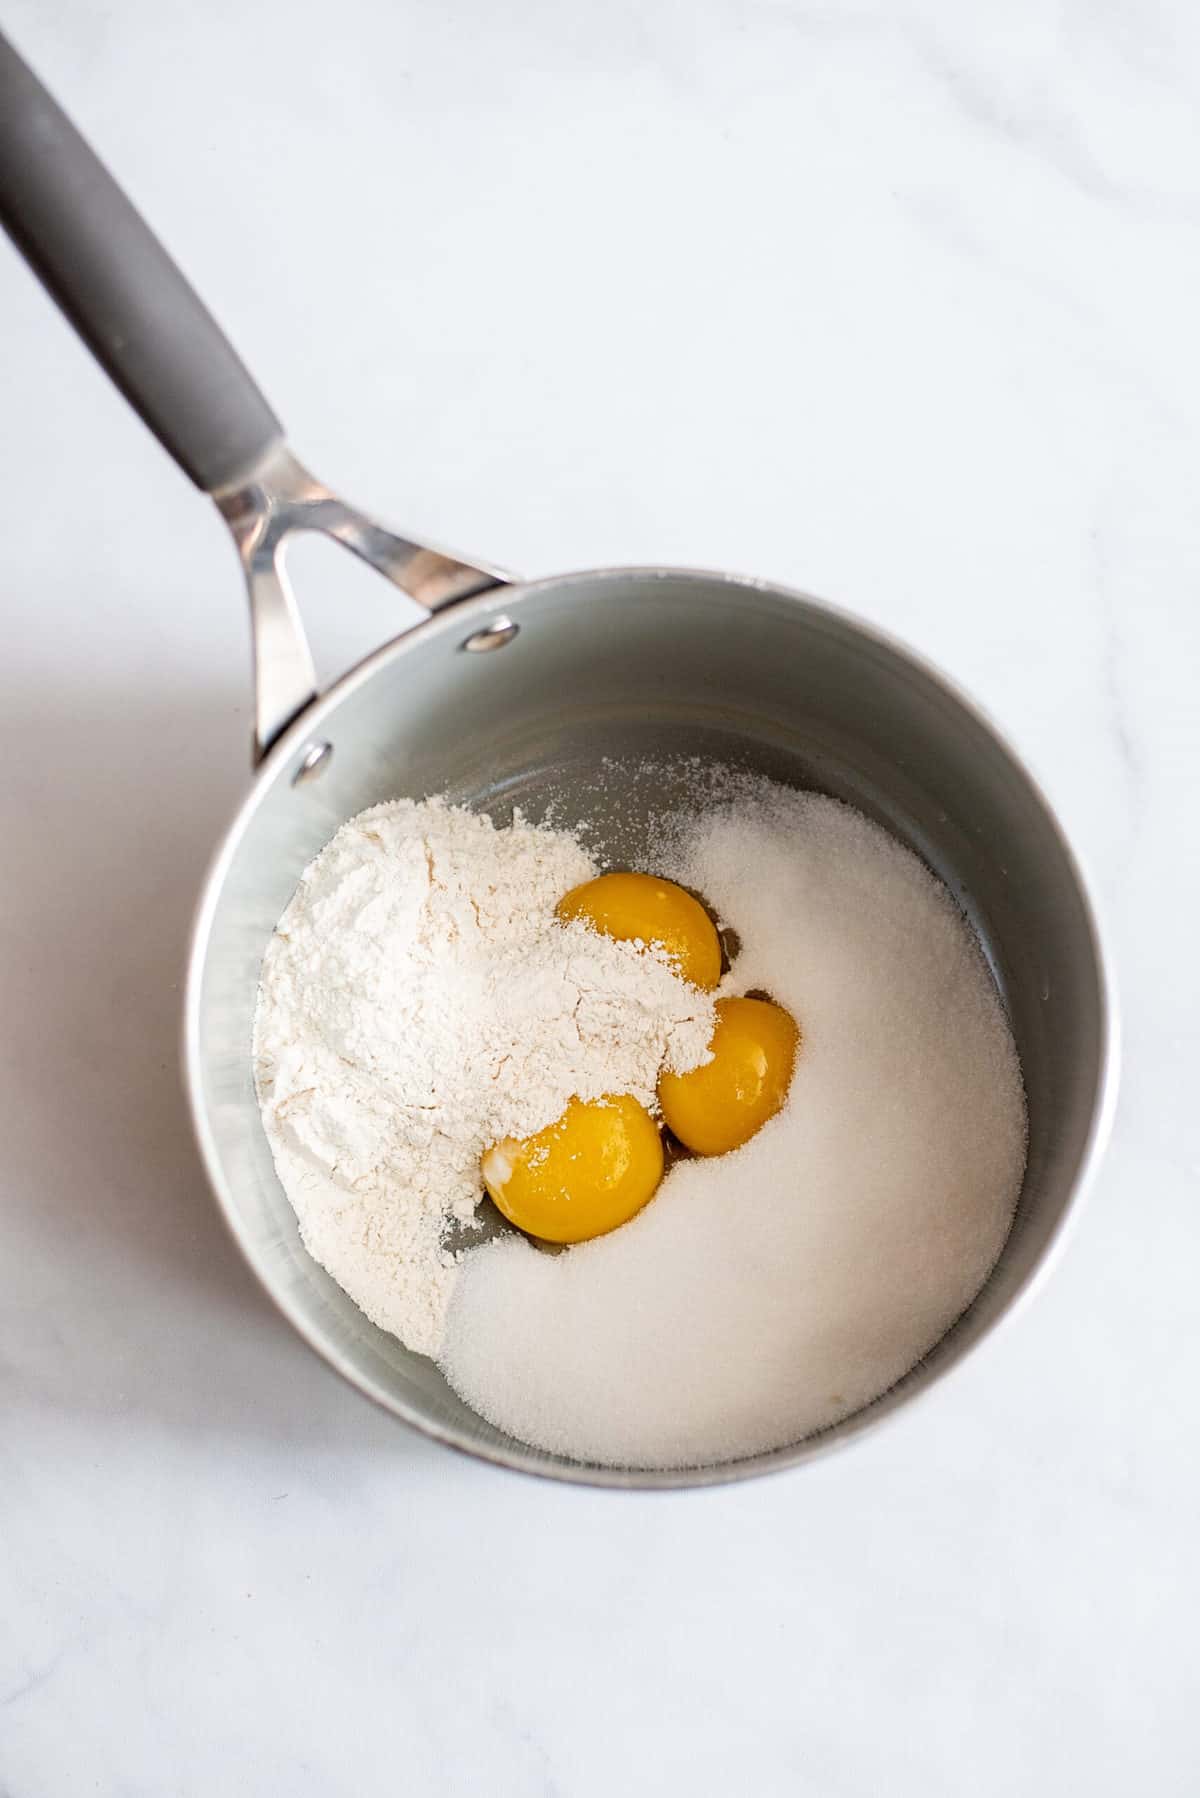 Add dry ingredients to yolks in saucepan.